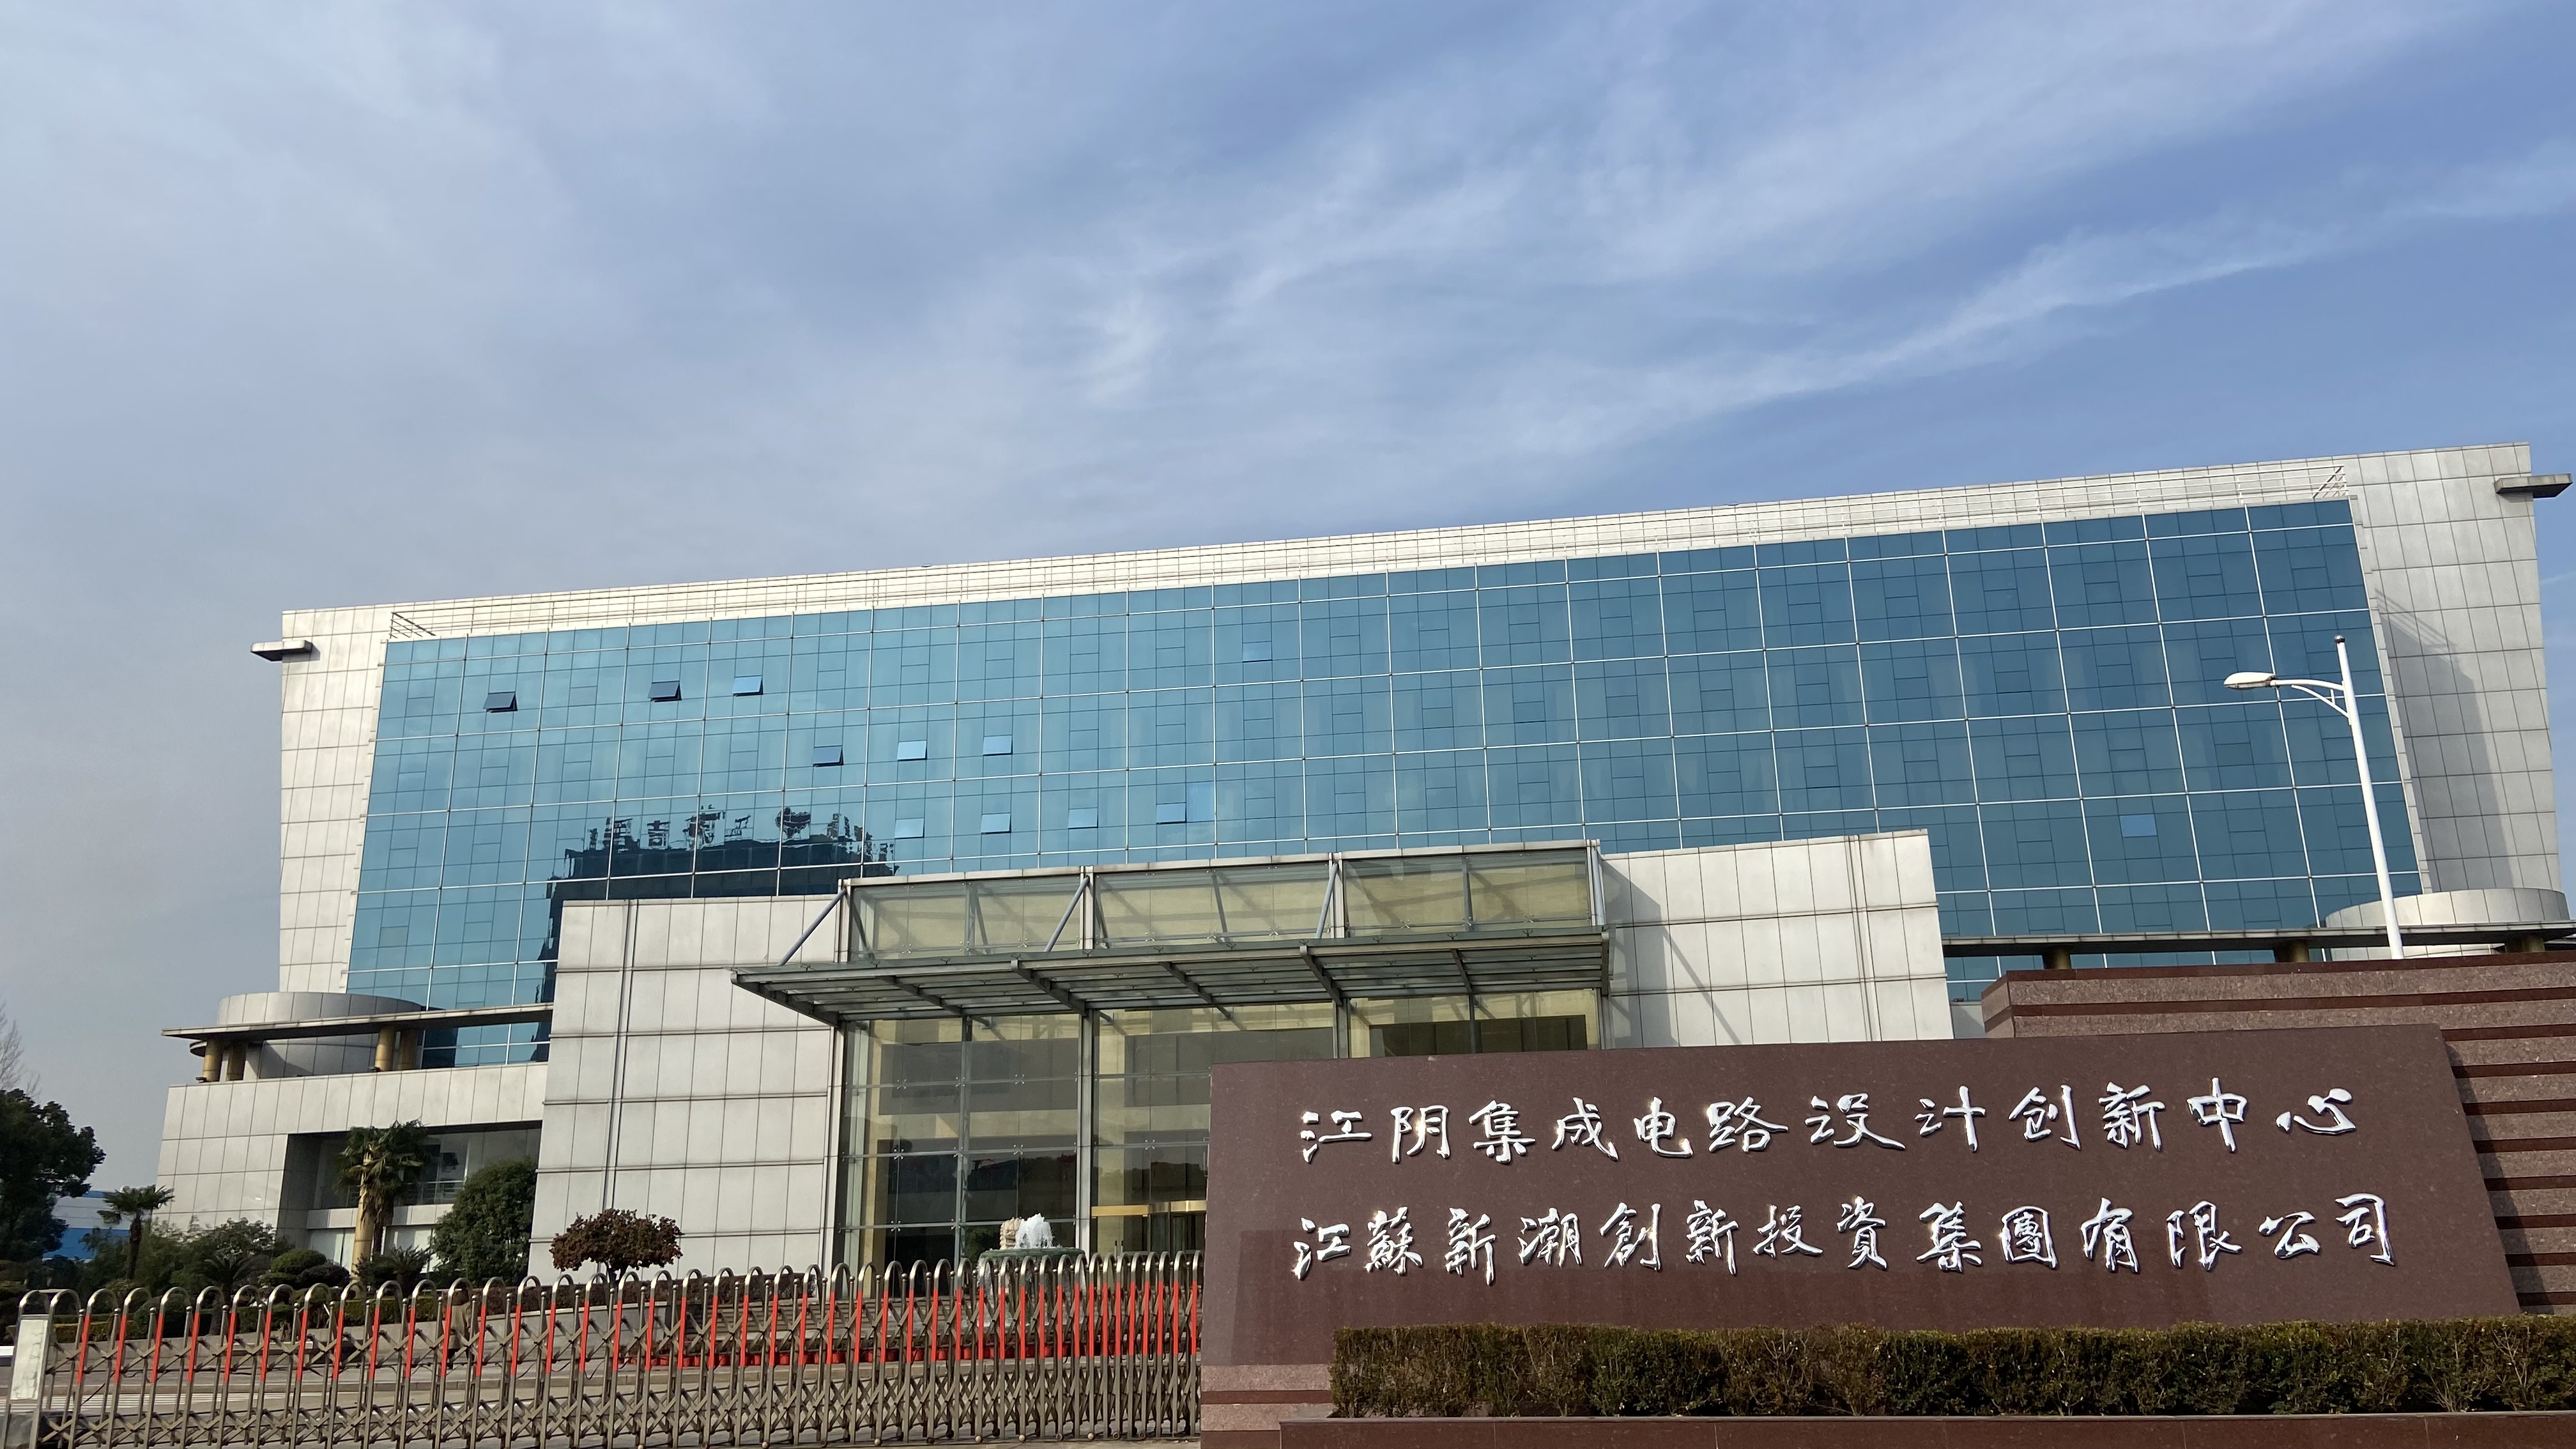 欢迎入驻江阴集成电路设计创新中心